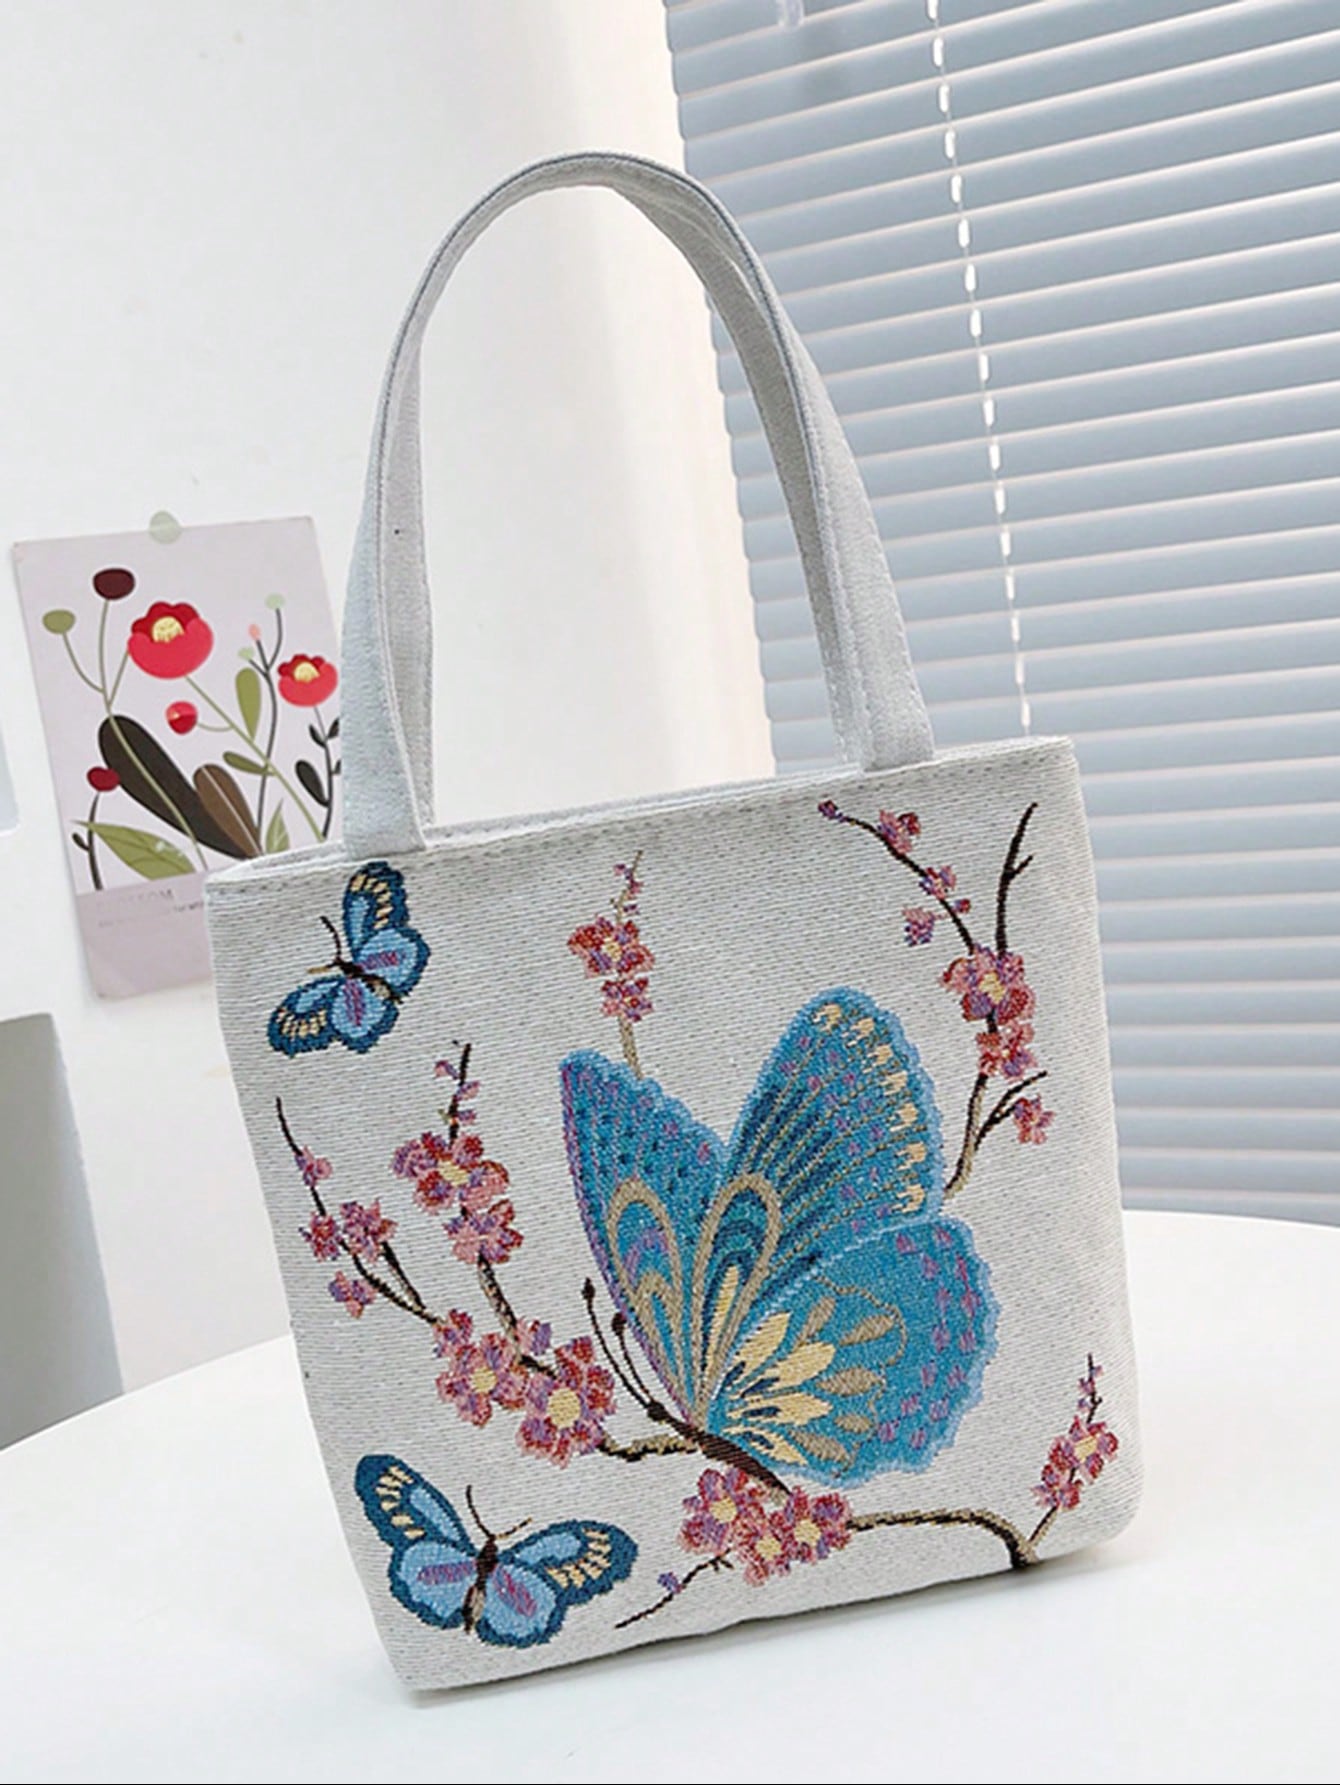 Квадратная сумка с рисунком бабочки Маленькая сумка через плечо с двойной ручкой, многоцветный сумка бабочки над цветами бежевый